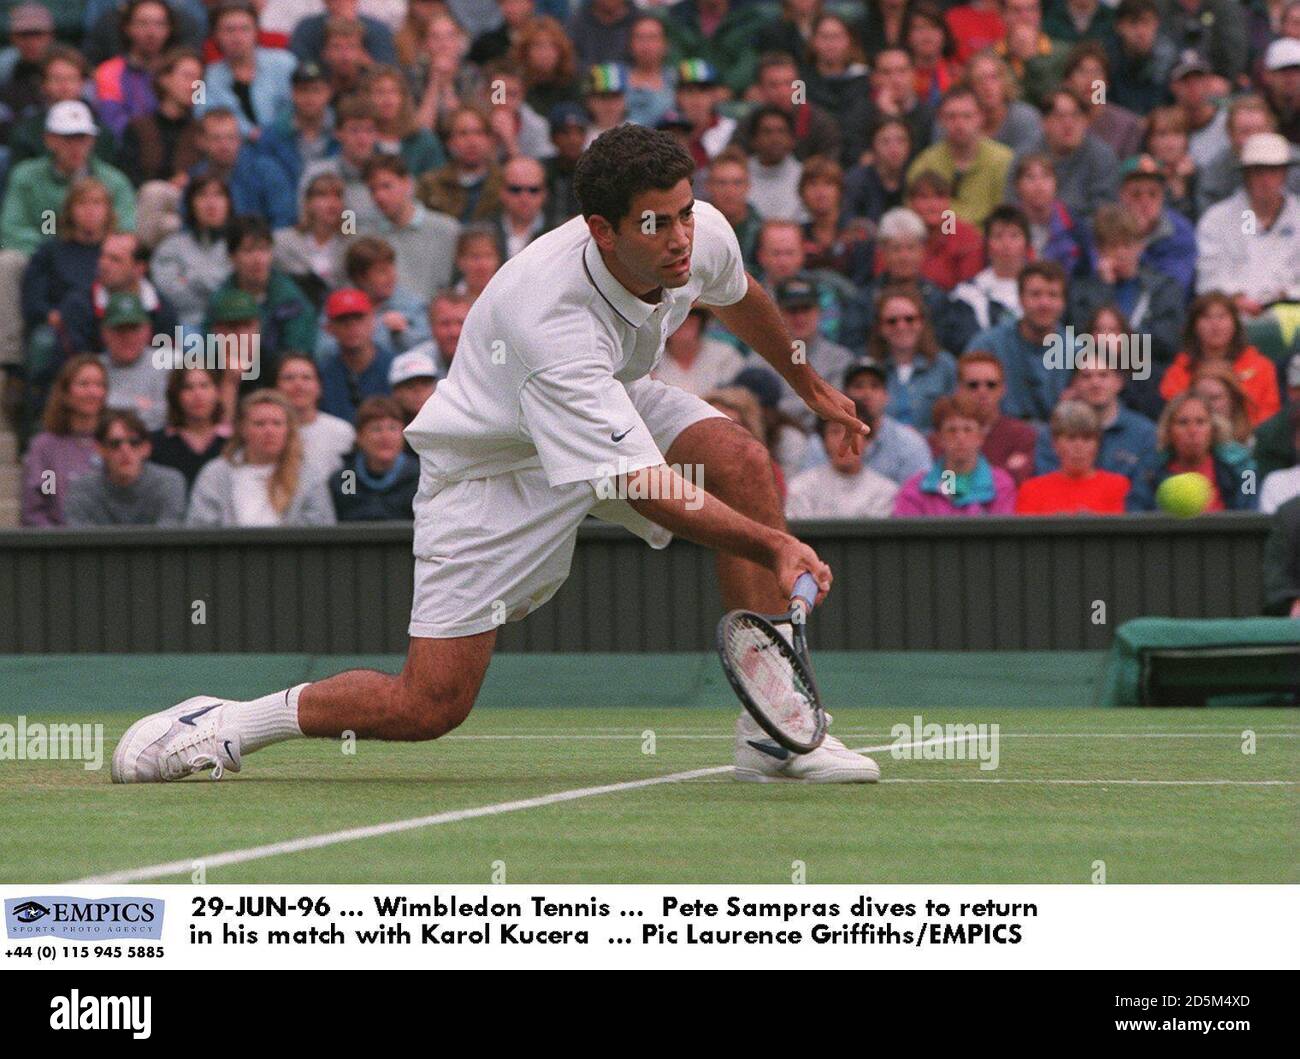 29-JUN-96 ... Wimbledon Tennis ...  Pete Sampras dives to return in his match with Karol Kucera Stock Photo